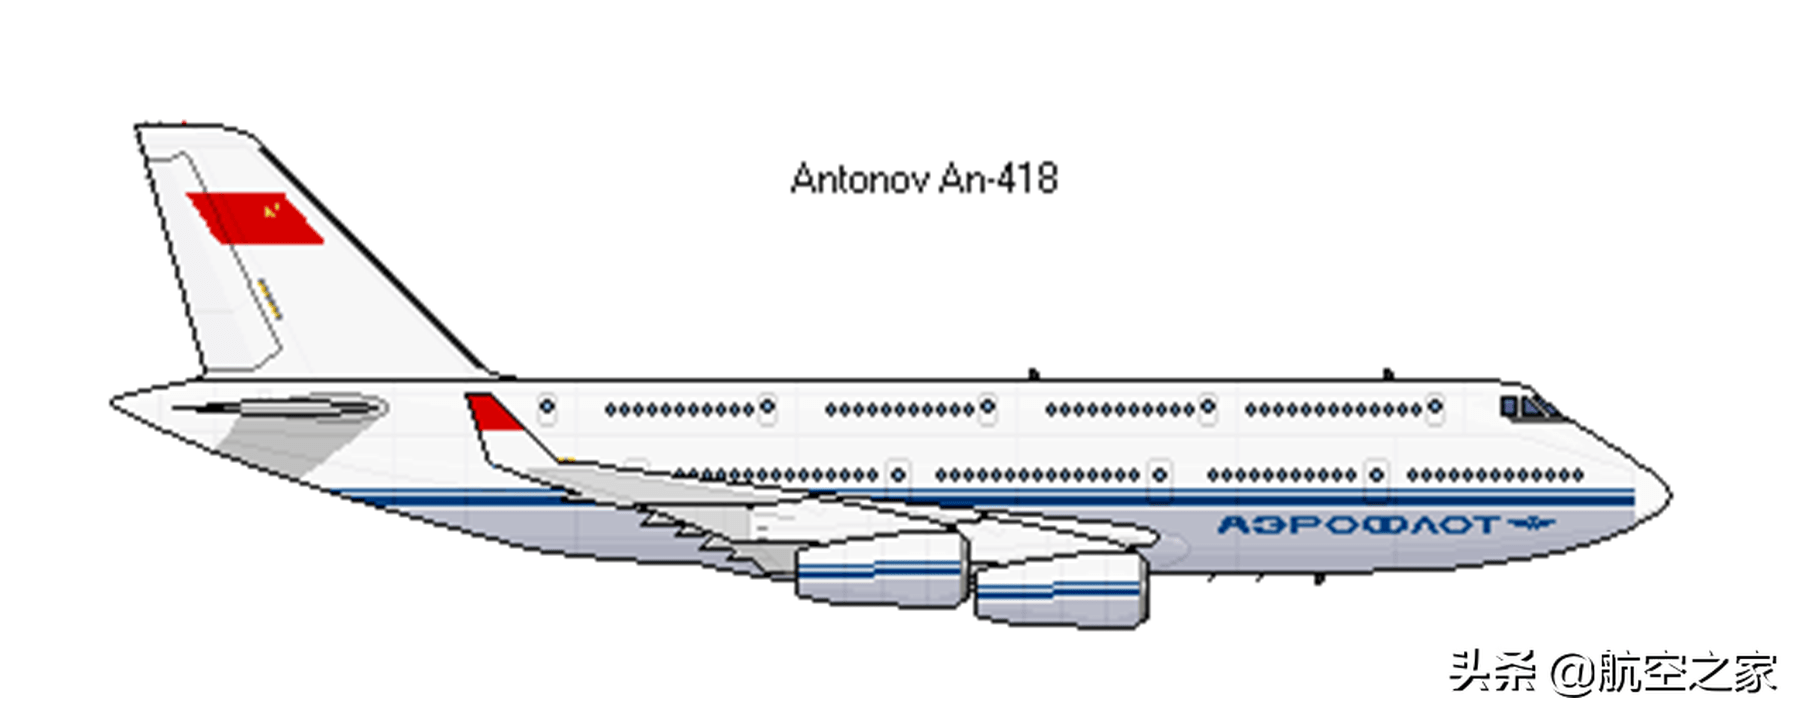 800座级的安-418:心比天高,命比纸薄的安东诺夫双层客机计划